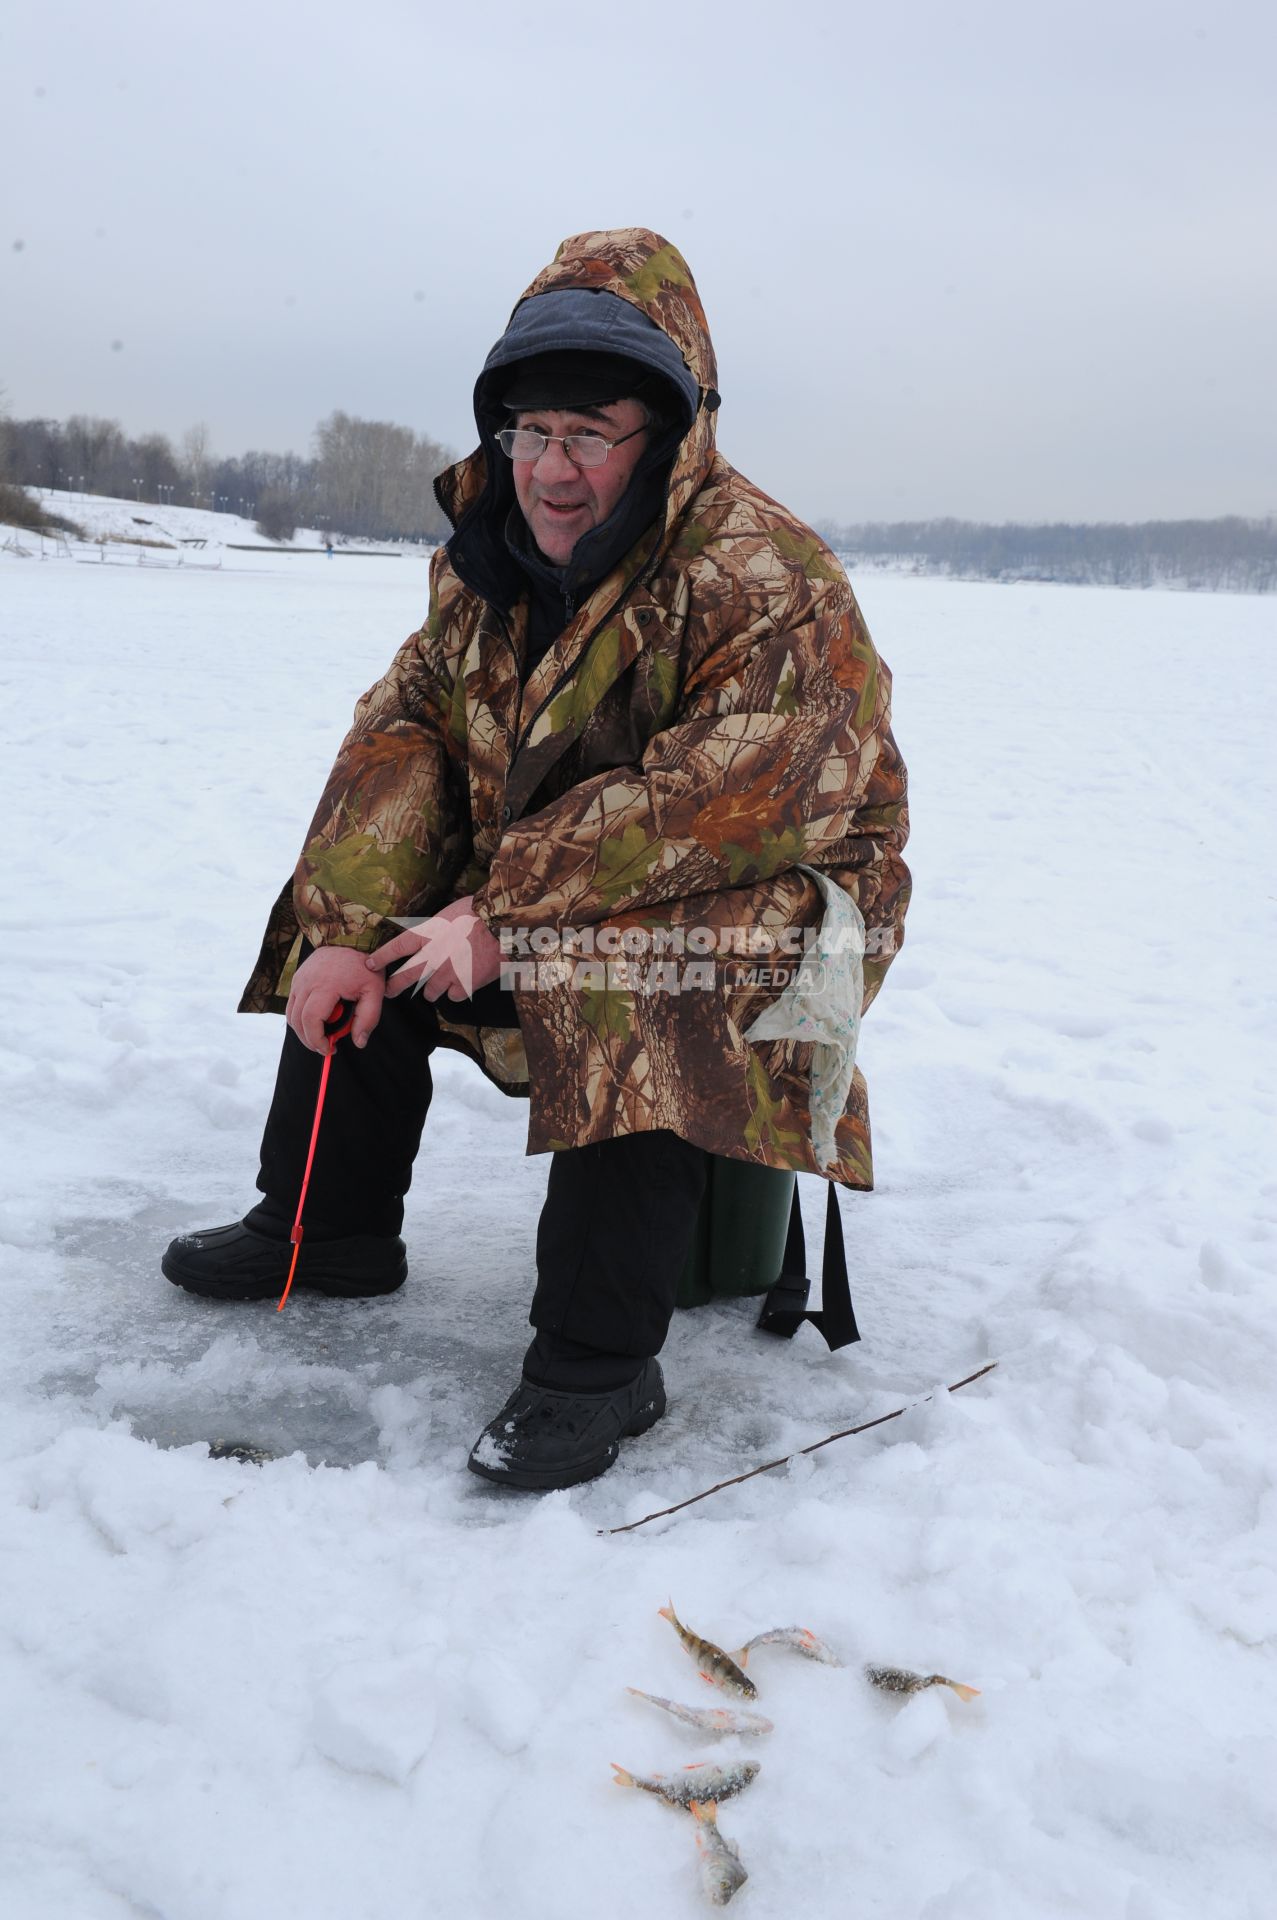 Работа МЧС по предупреждению несчастных случаев. Борисовские пруды. На снимке: мужчина рыбачит на реке.